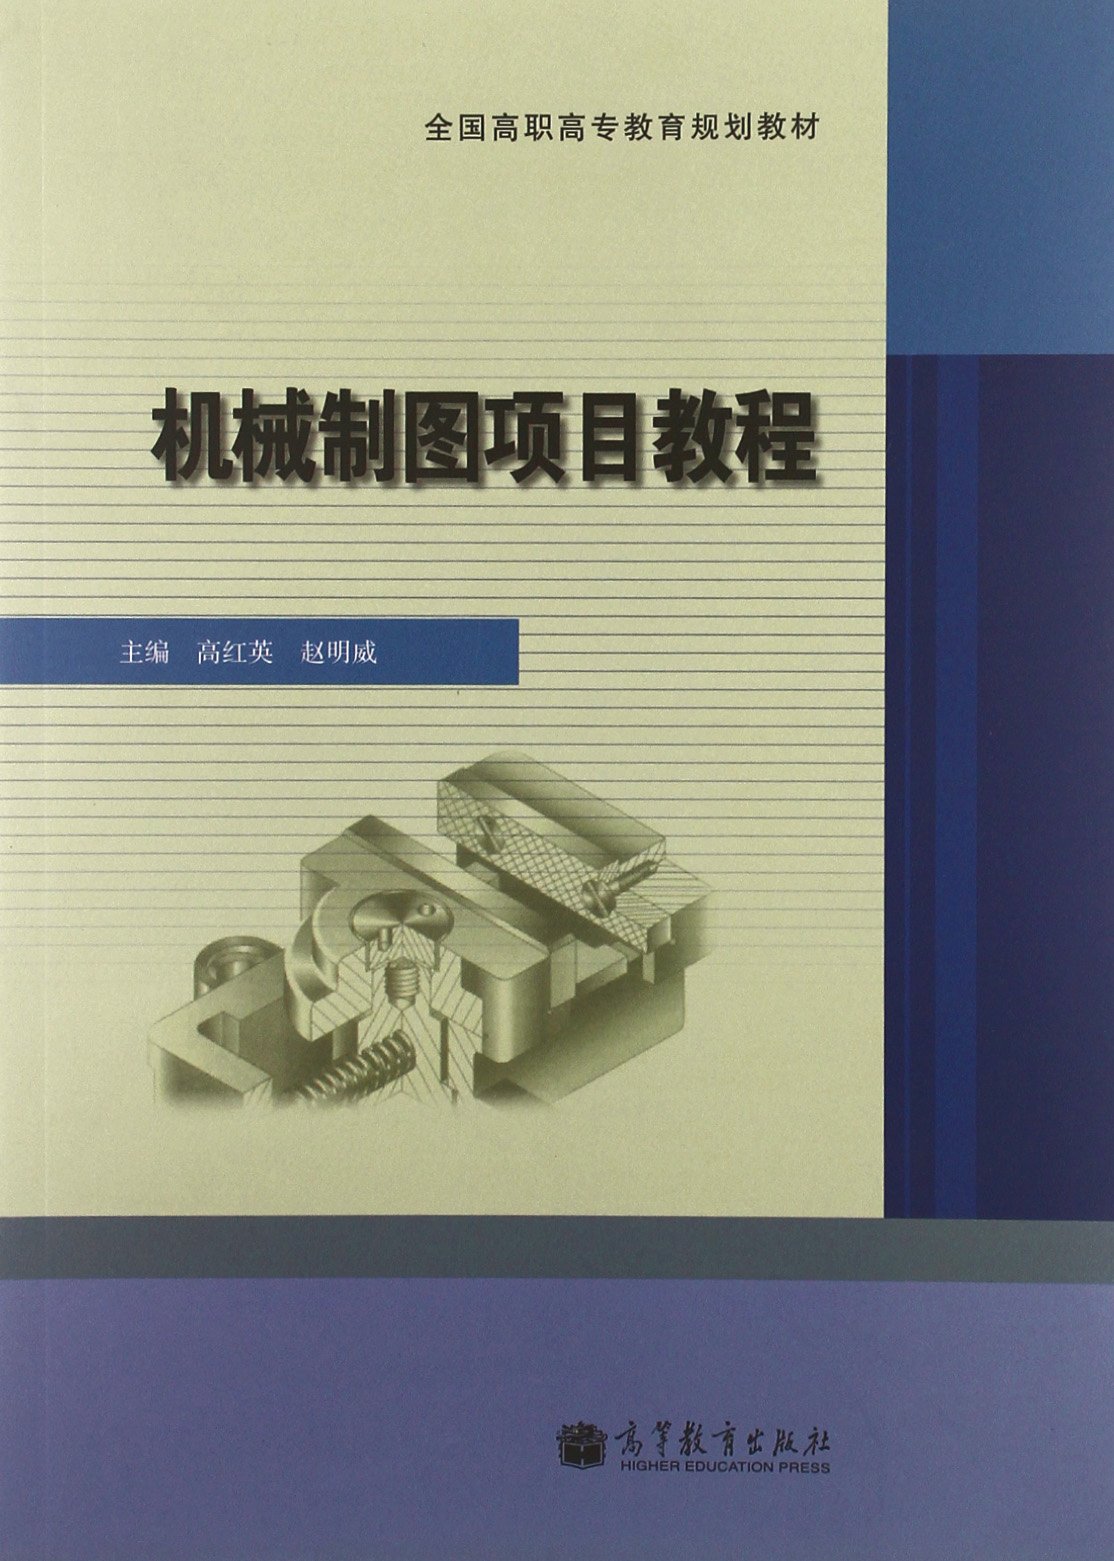 機械製圖項目教程(2012年高等教育出版社出版的圖書)